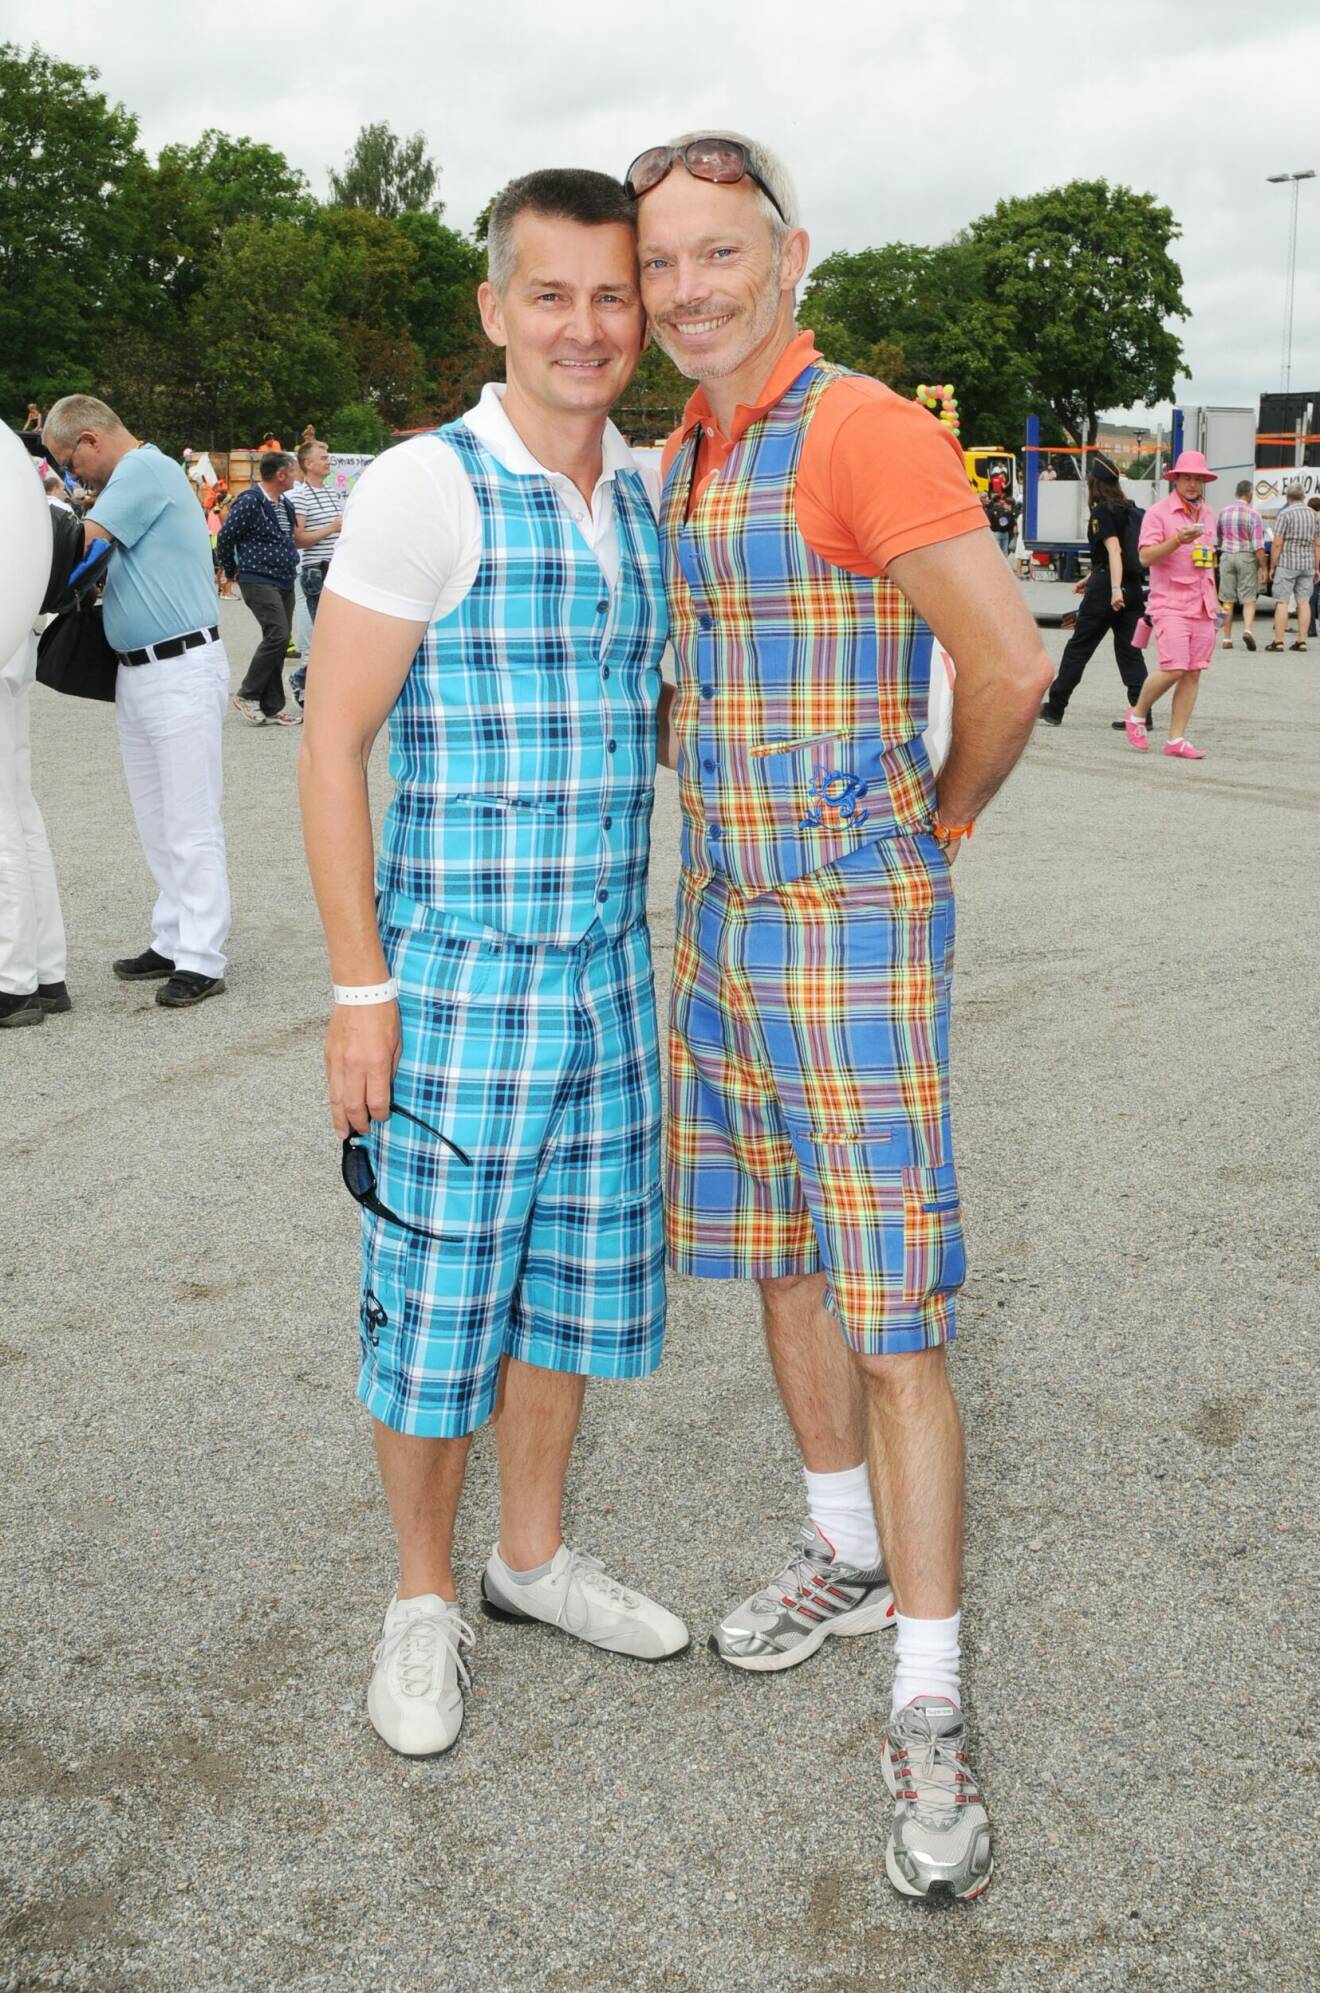 Pekka Heino och Erik Kristensen klädda i rutiga västar till rutiga halvlånga shorts, på Pride.